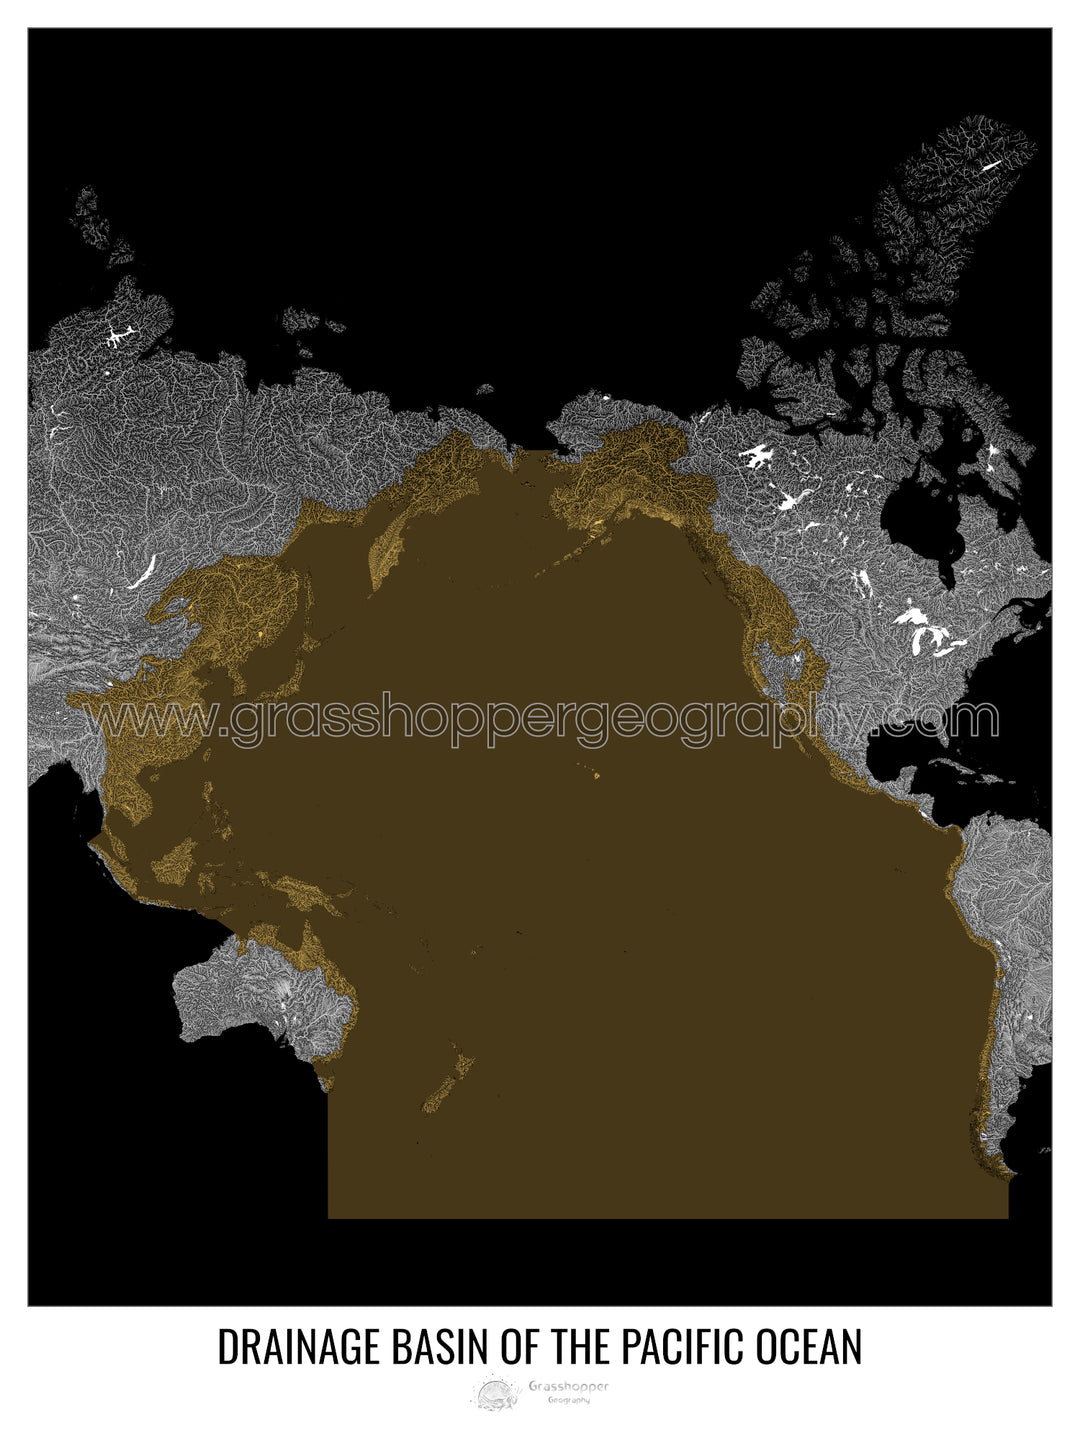 Océan Pacifique - Carte des bassins versants, noir v2 - Impression encadrée